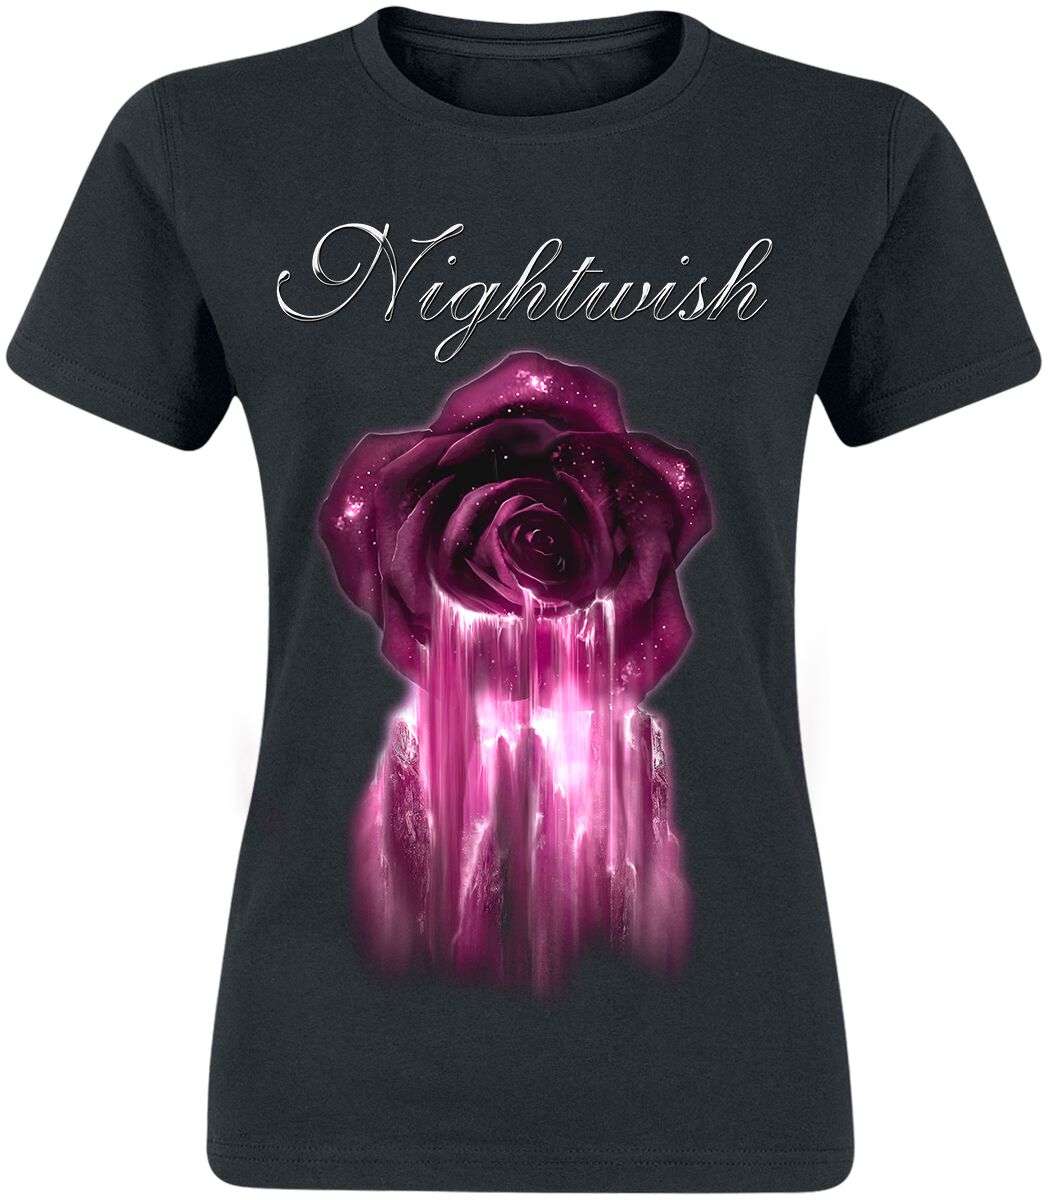 nightwish t-shirt - century child - s bis xl - fÃ¼r damen - grÃ¶ÃŸe s - - emp exklusives merchandise! schwarz donna